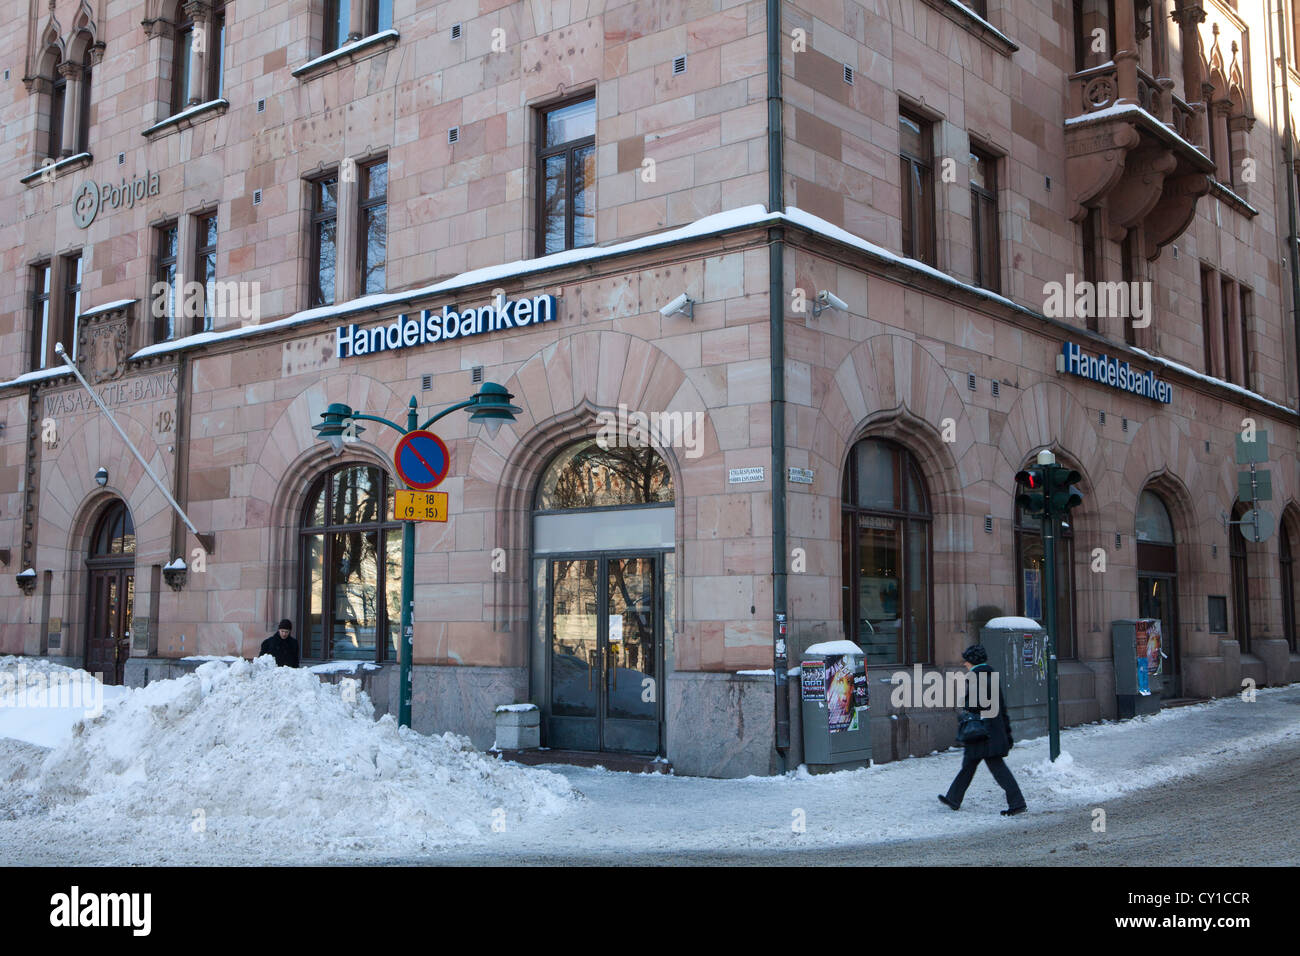 Bank in downtown Helsinki Stock Photo